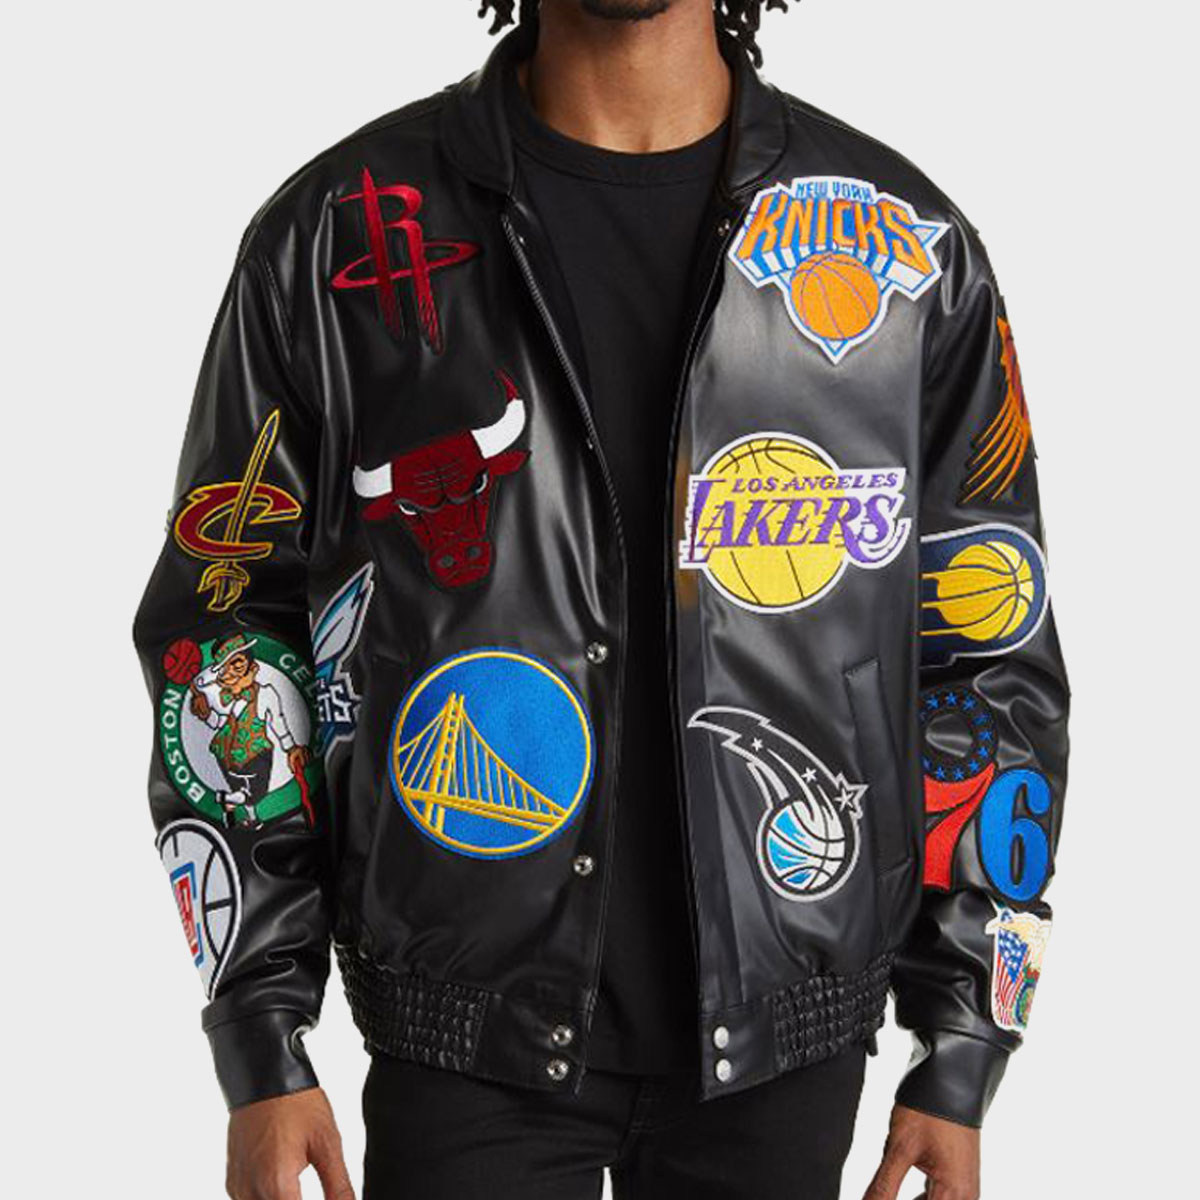 NBA Varsity jacket